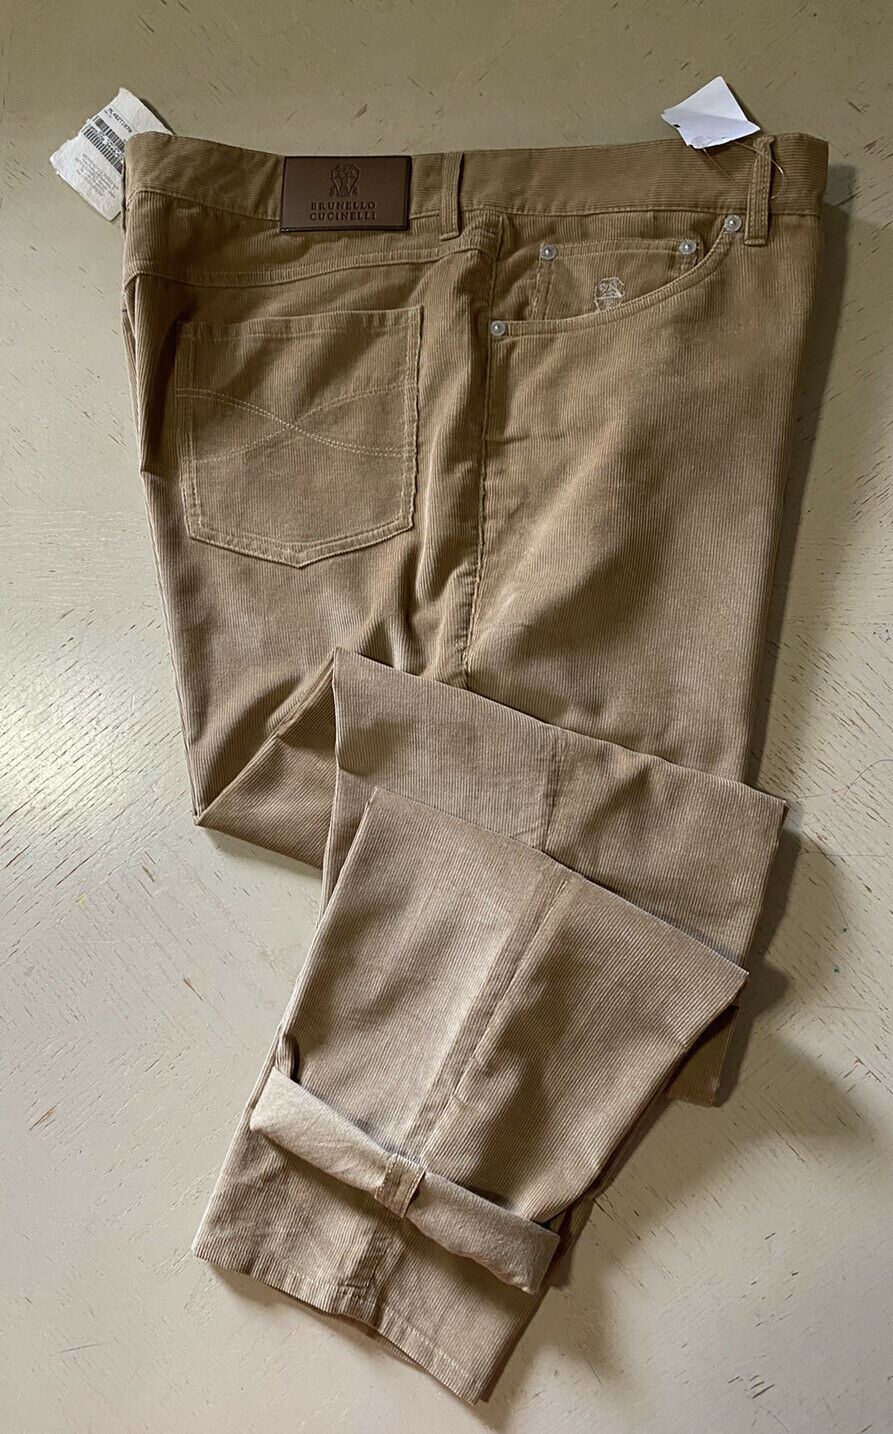 NWT $1025 Brunello Cucinelli Мужские вельветовые бархатные брюки цвета хаки 38 США/54 ЕС Италия